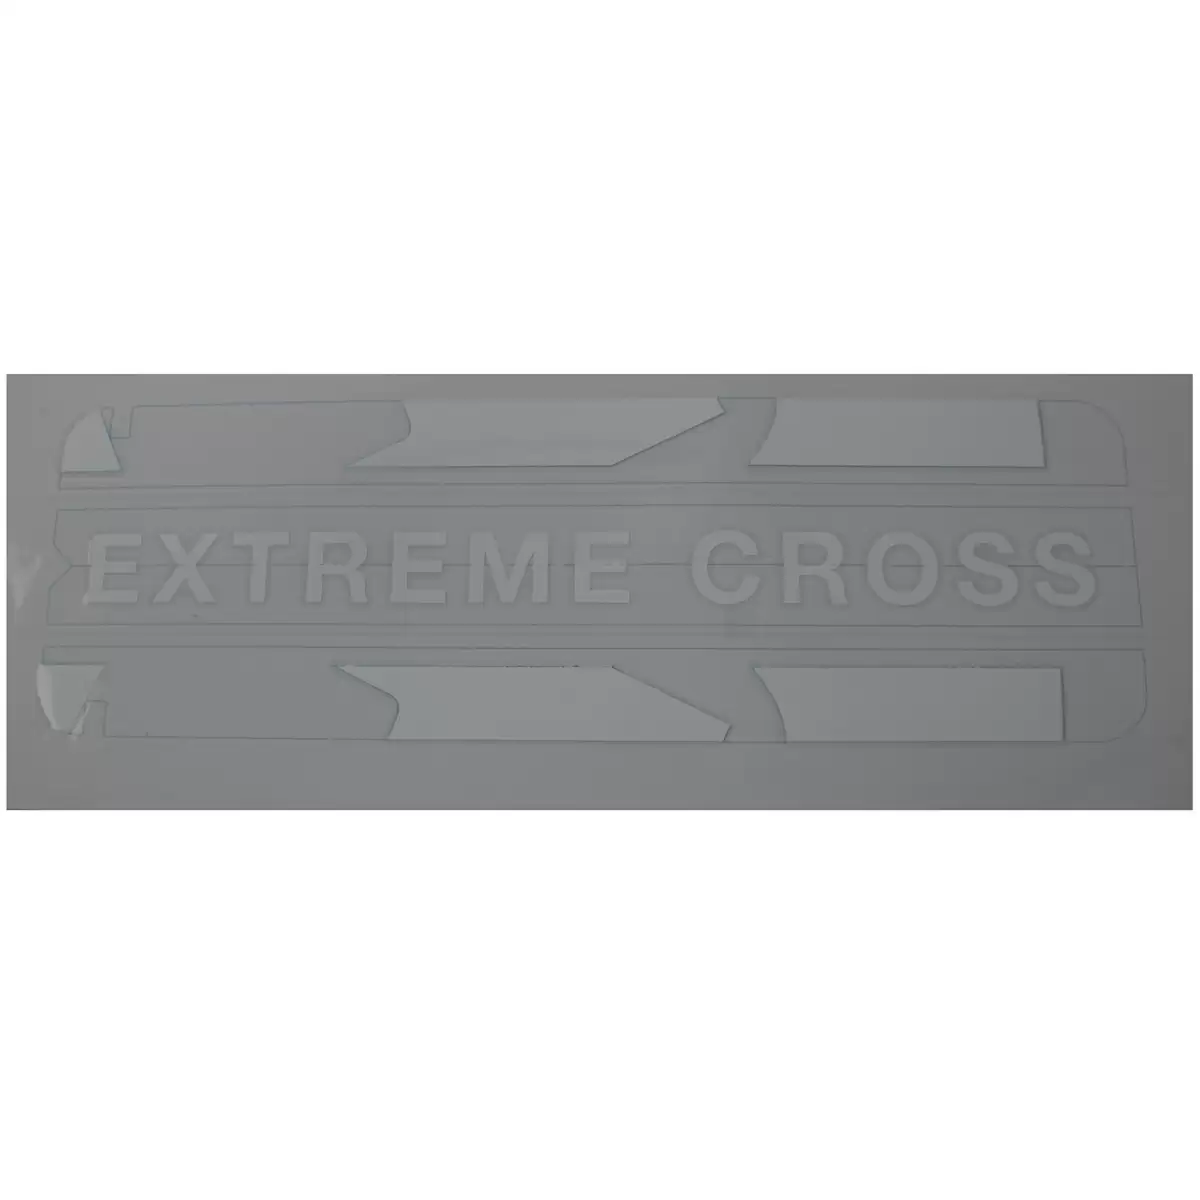 Autocollant cache batterie Extreme Cross blanc - image